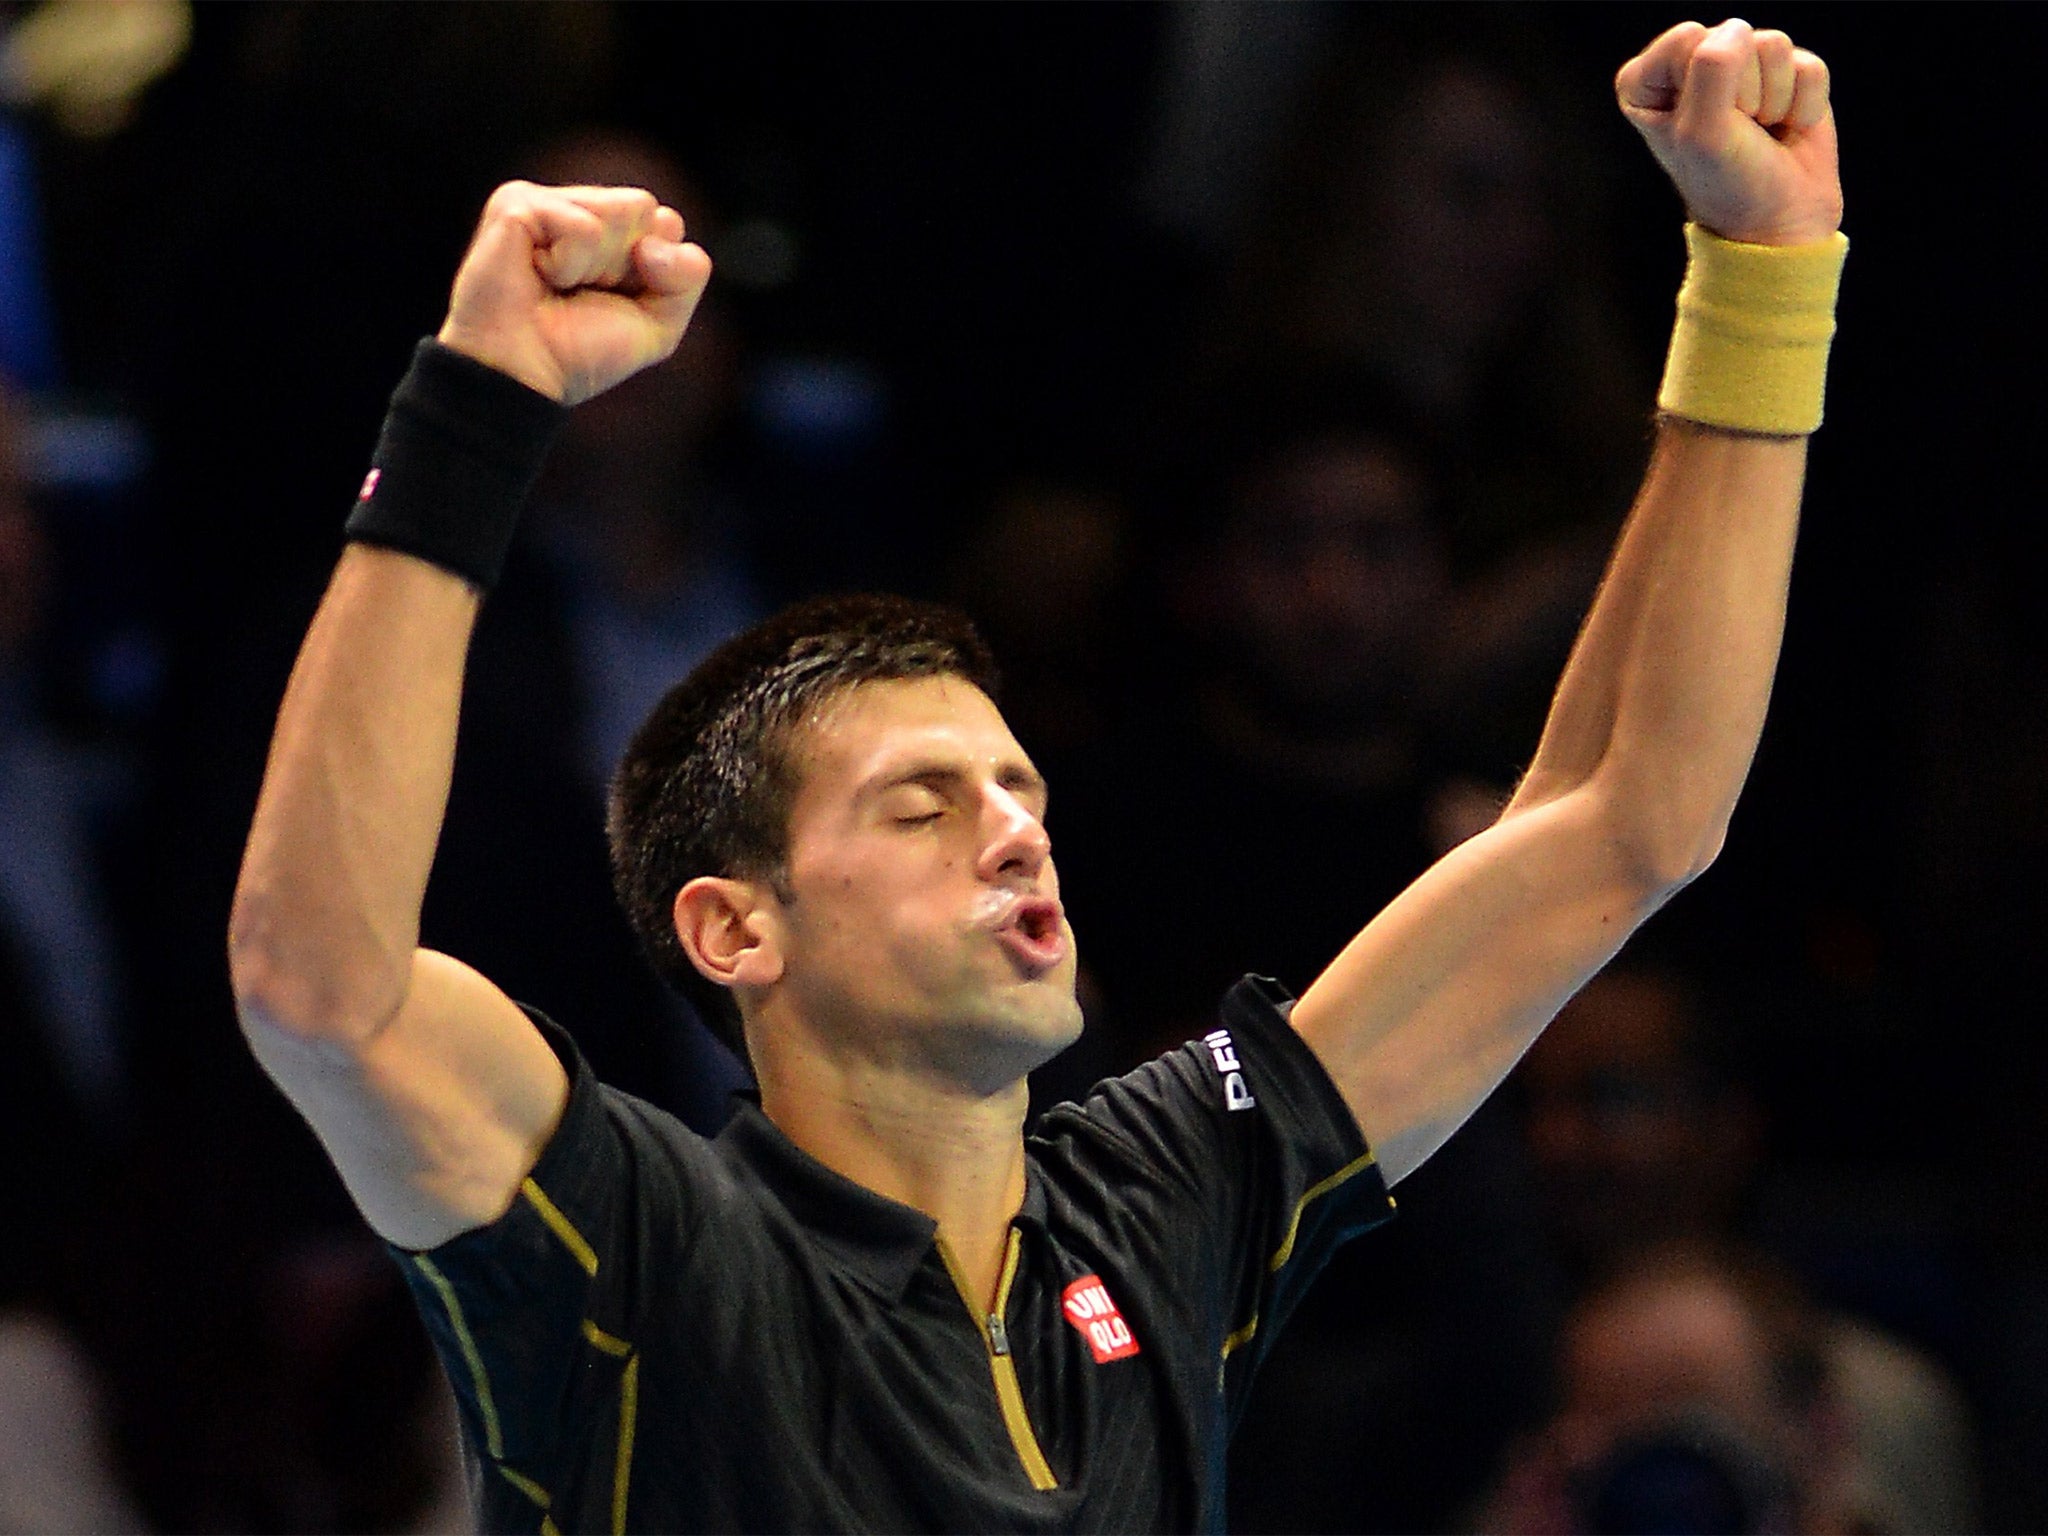 Novak Djokovic celebrates victory over Stanislas Wawrinka